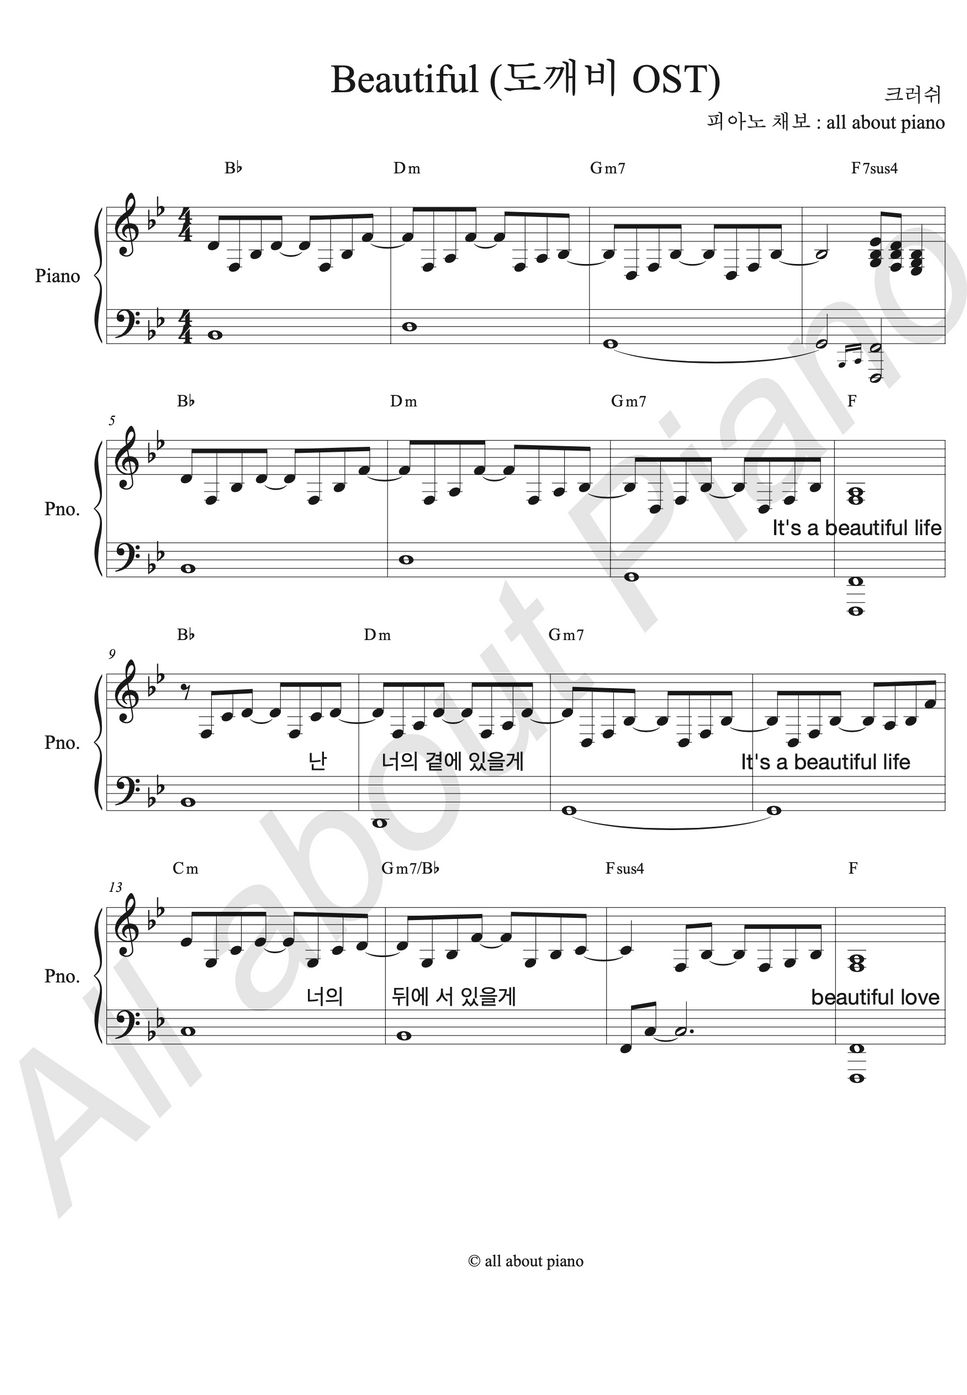 크러쉬 - Beautiful (도깨비ost) (피아노 반주) by all about piano